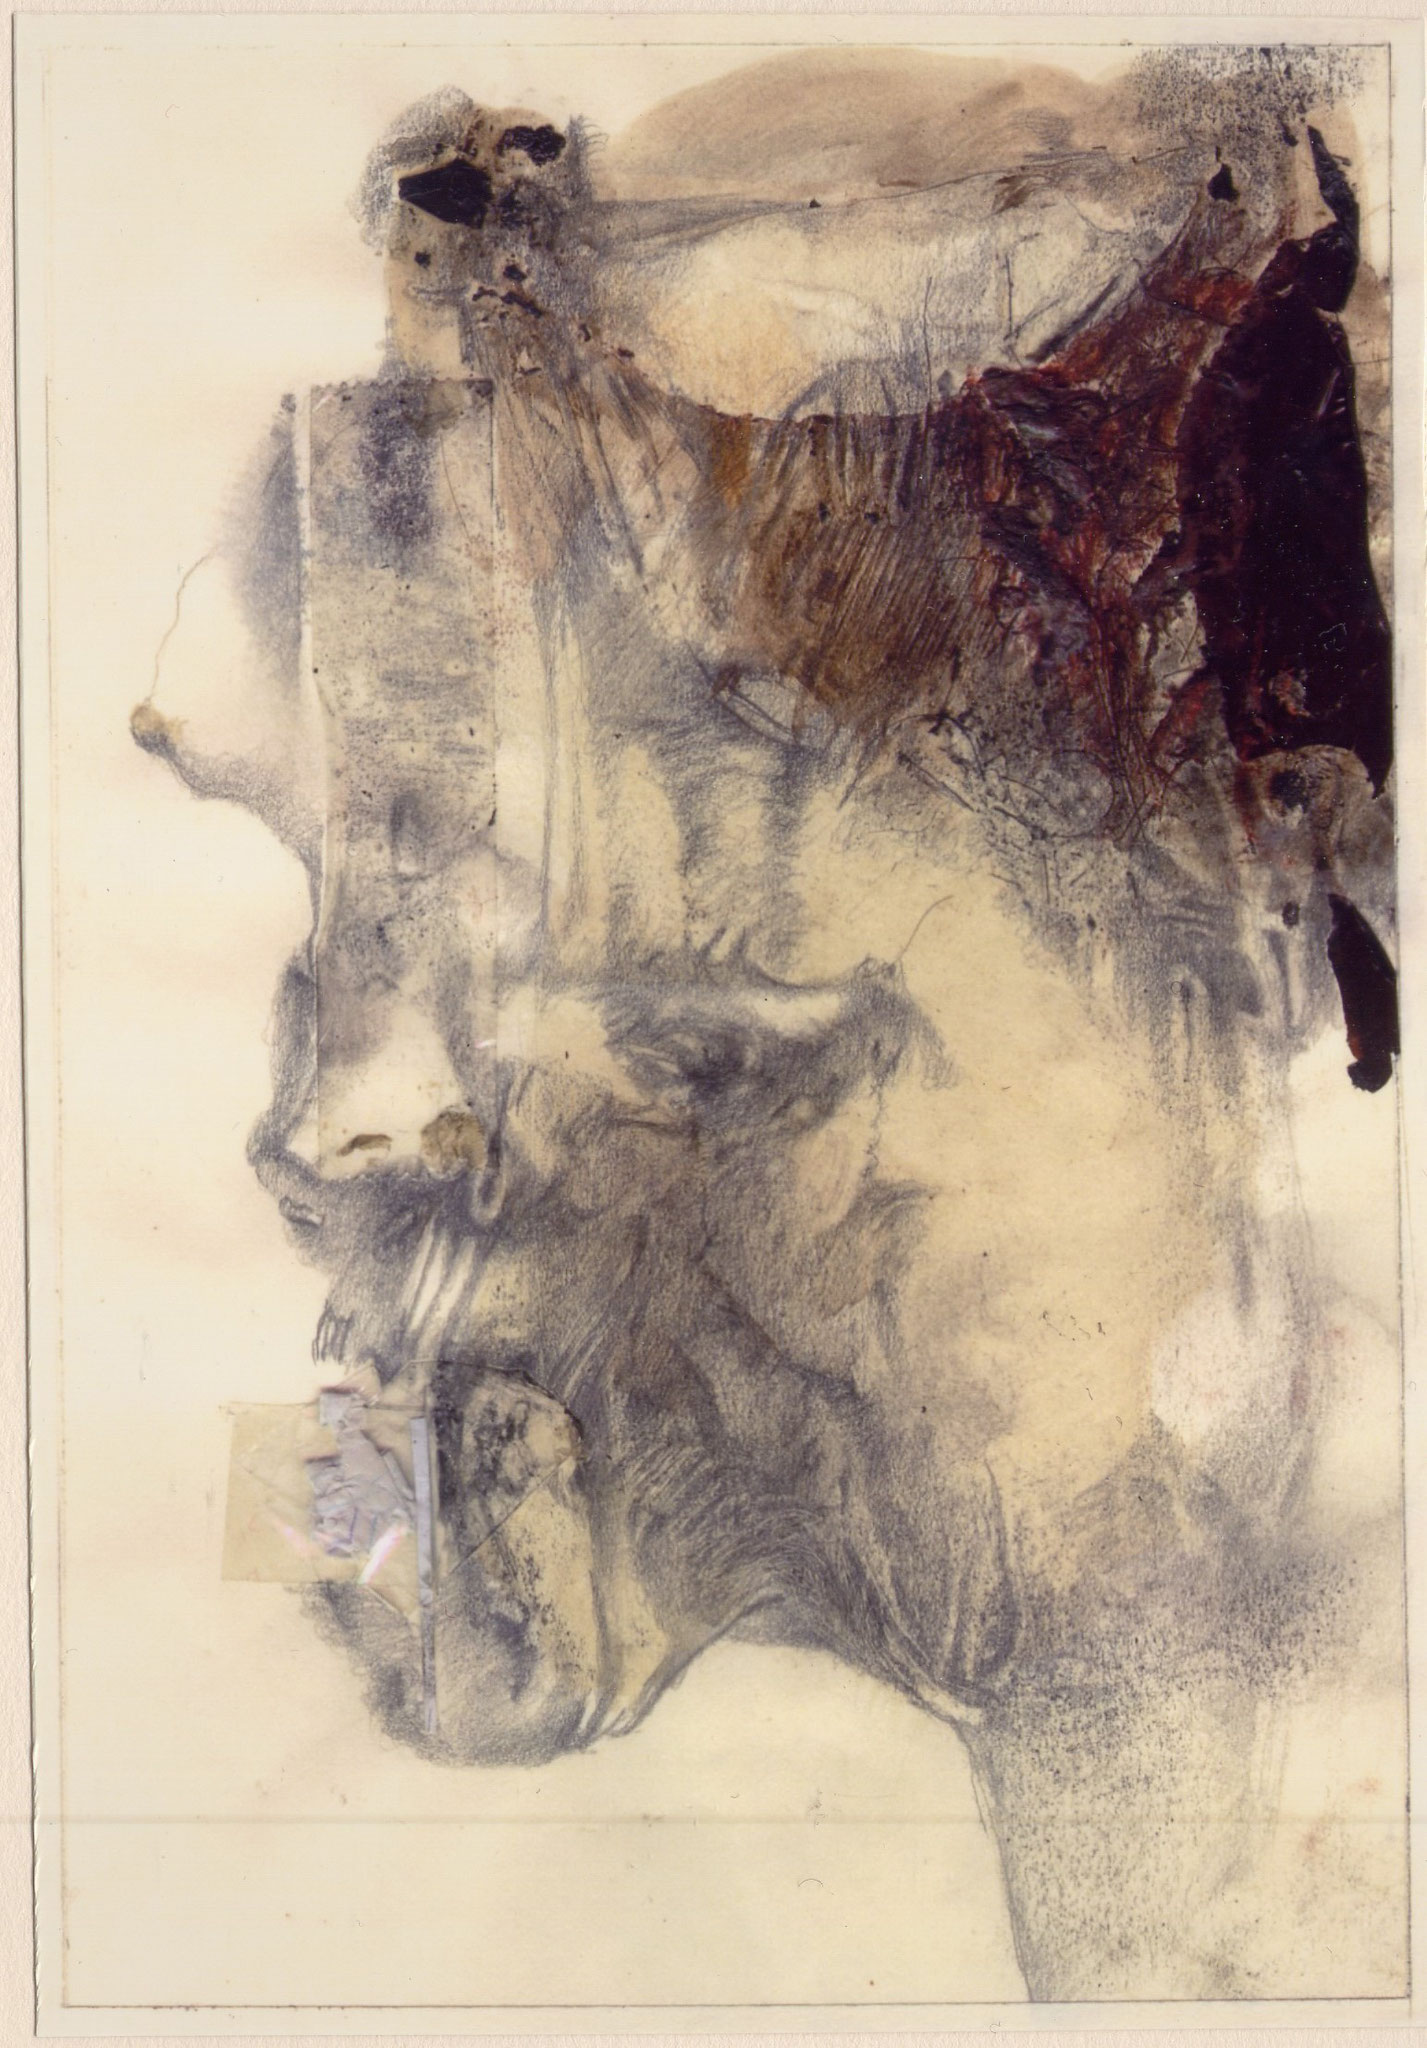 Corps du visage - planche 1 - 2002 - voir Oeuvres & Gloses dans Galerie